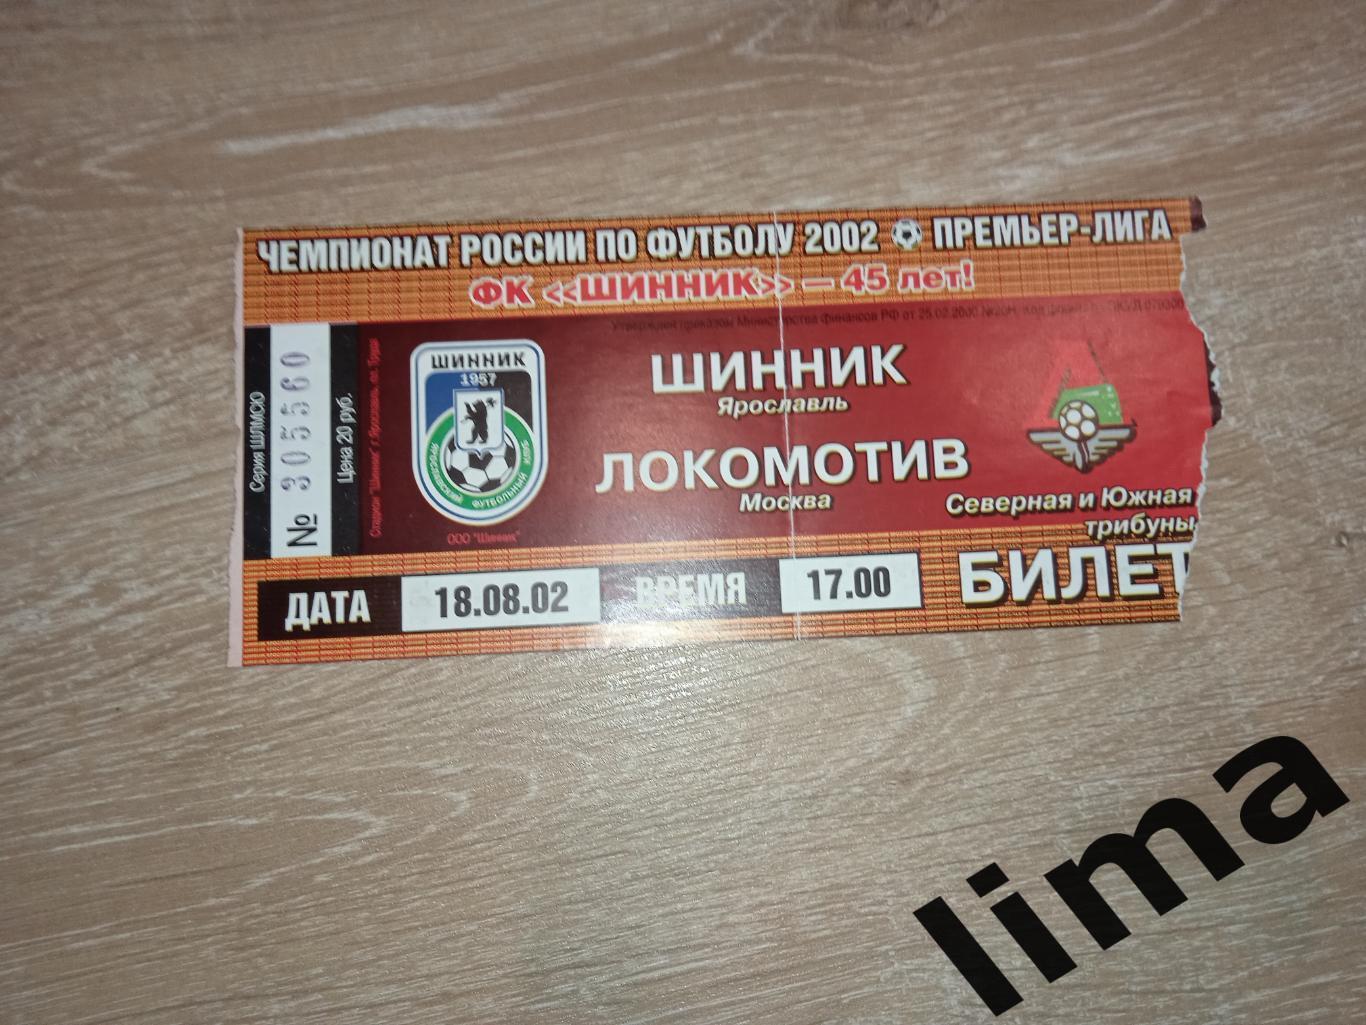 Билет футбол Шинник Ярославль - Локомотив Москва 18.08.2002